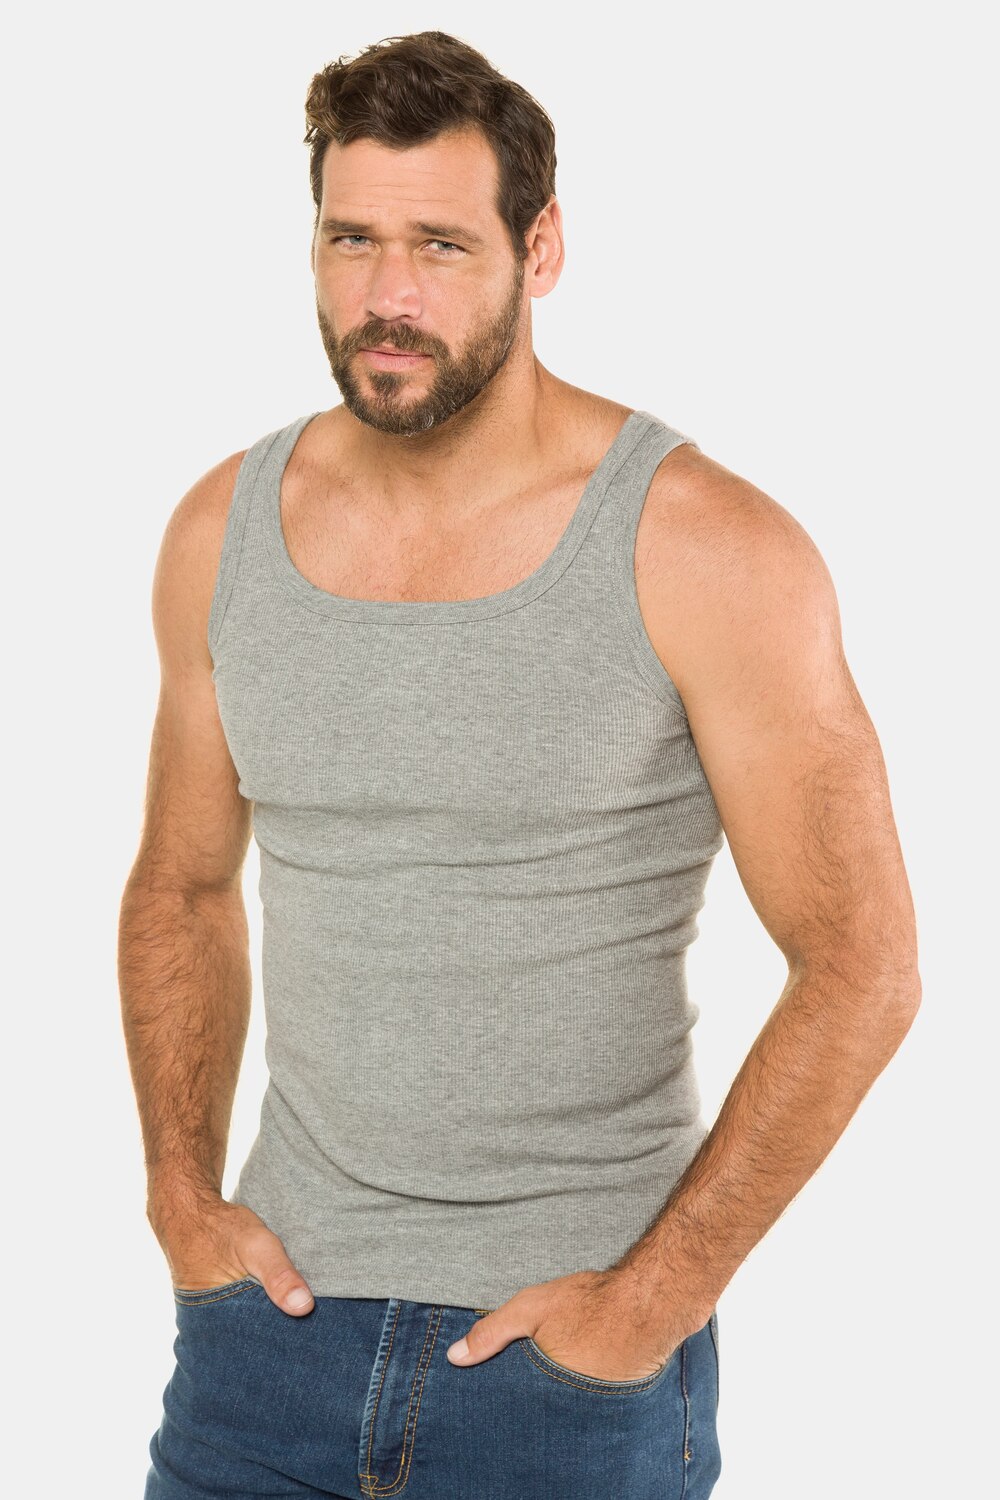 Grote Maten onderhemd, Heren, grijs, Maat: 6, Katoen, JP1880